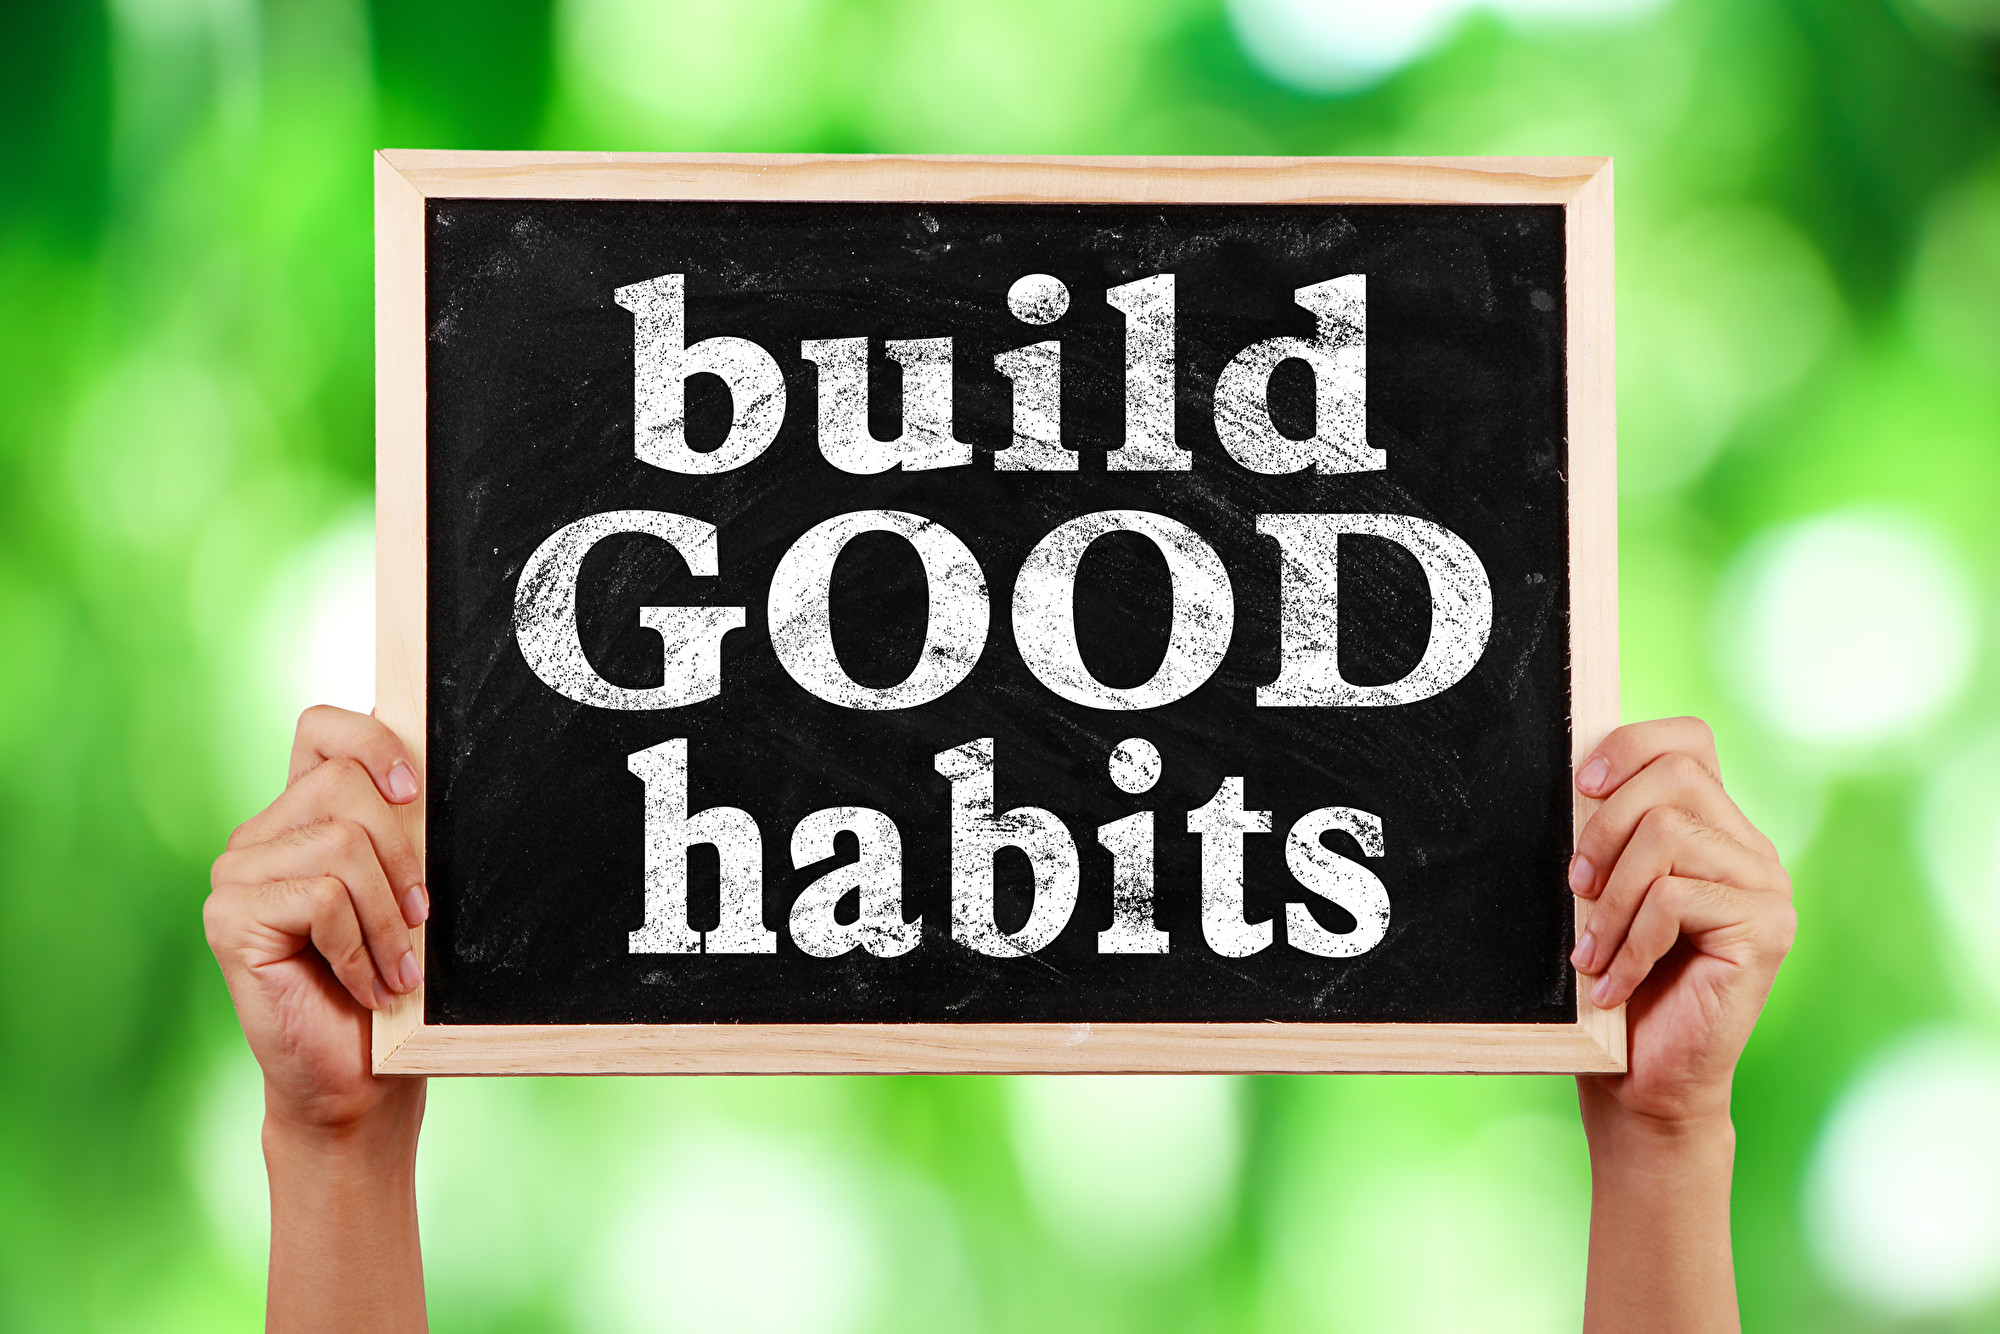 Unique habits. Good Habits. Good and Bad Habits. Good Habits Bad Habits. Break Bad Habits build good Habits.